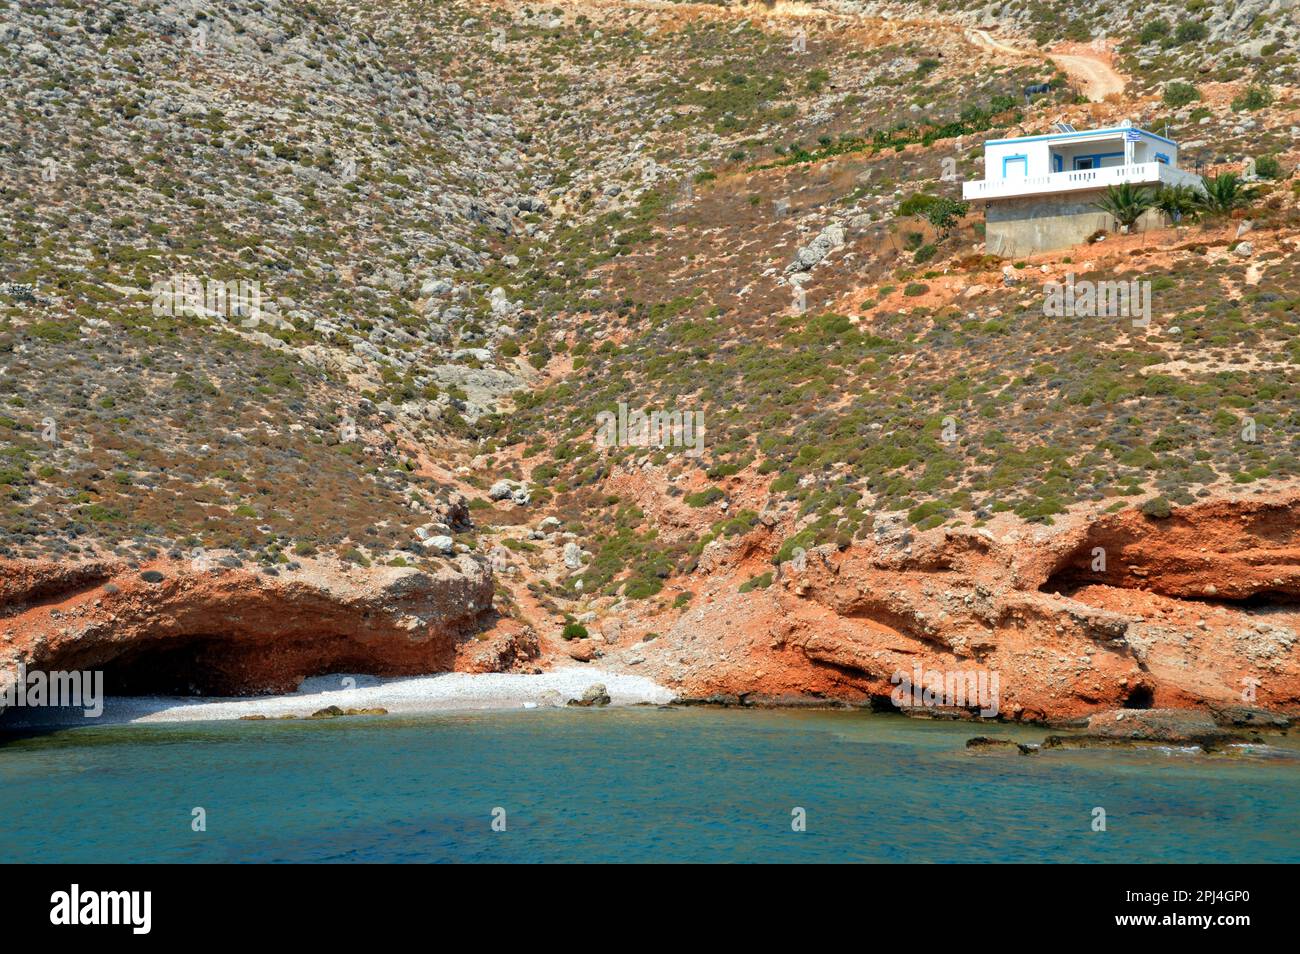 Grecia, Isola di Levitha: Una piccola spiaggia appartata con grotte, senza dubbio utilizzata dai proprietari della casa isolata sopra. Foto Stock